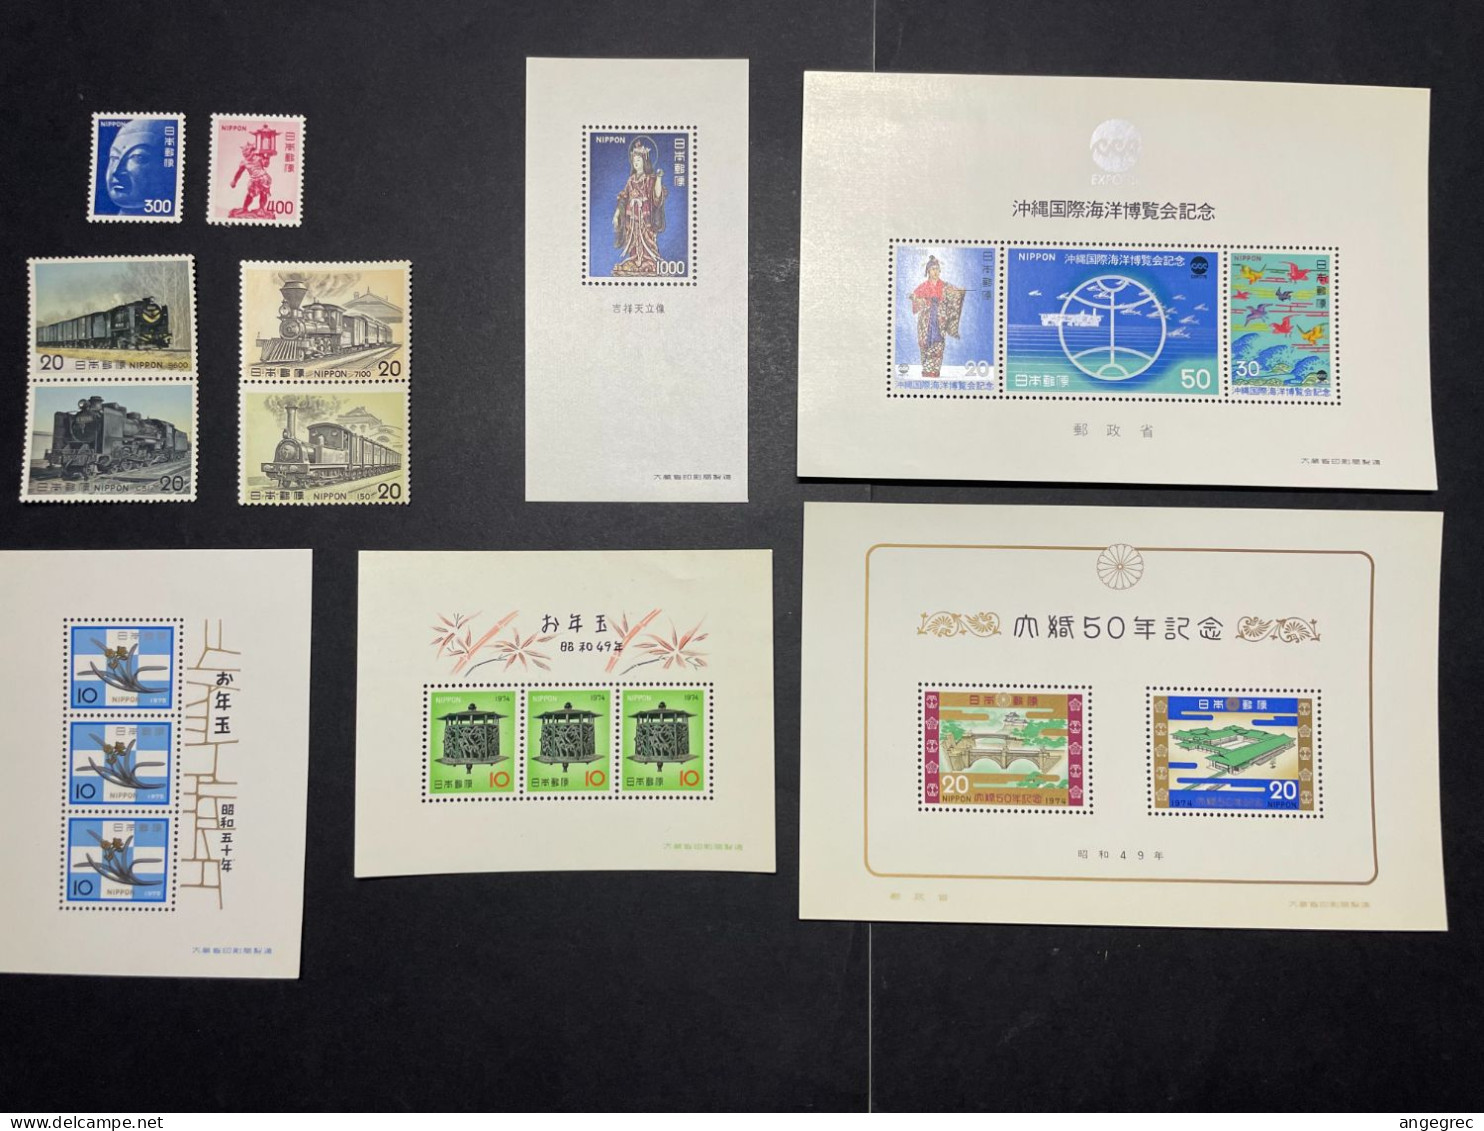 Timbre Japon 1973 à 1975 Lot De 6 Timbre + 5 Bloc Feuillet Neuf ** - Collections, Lots & Series